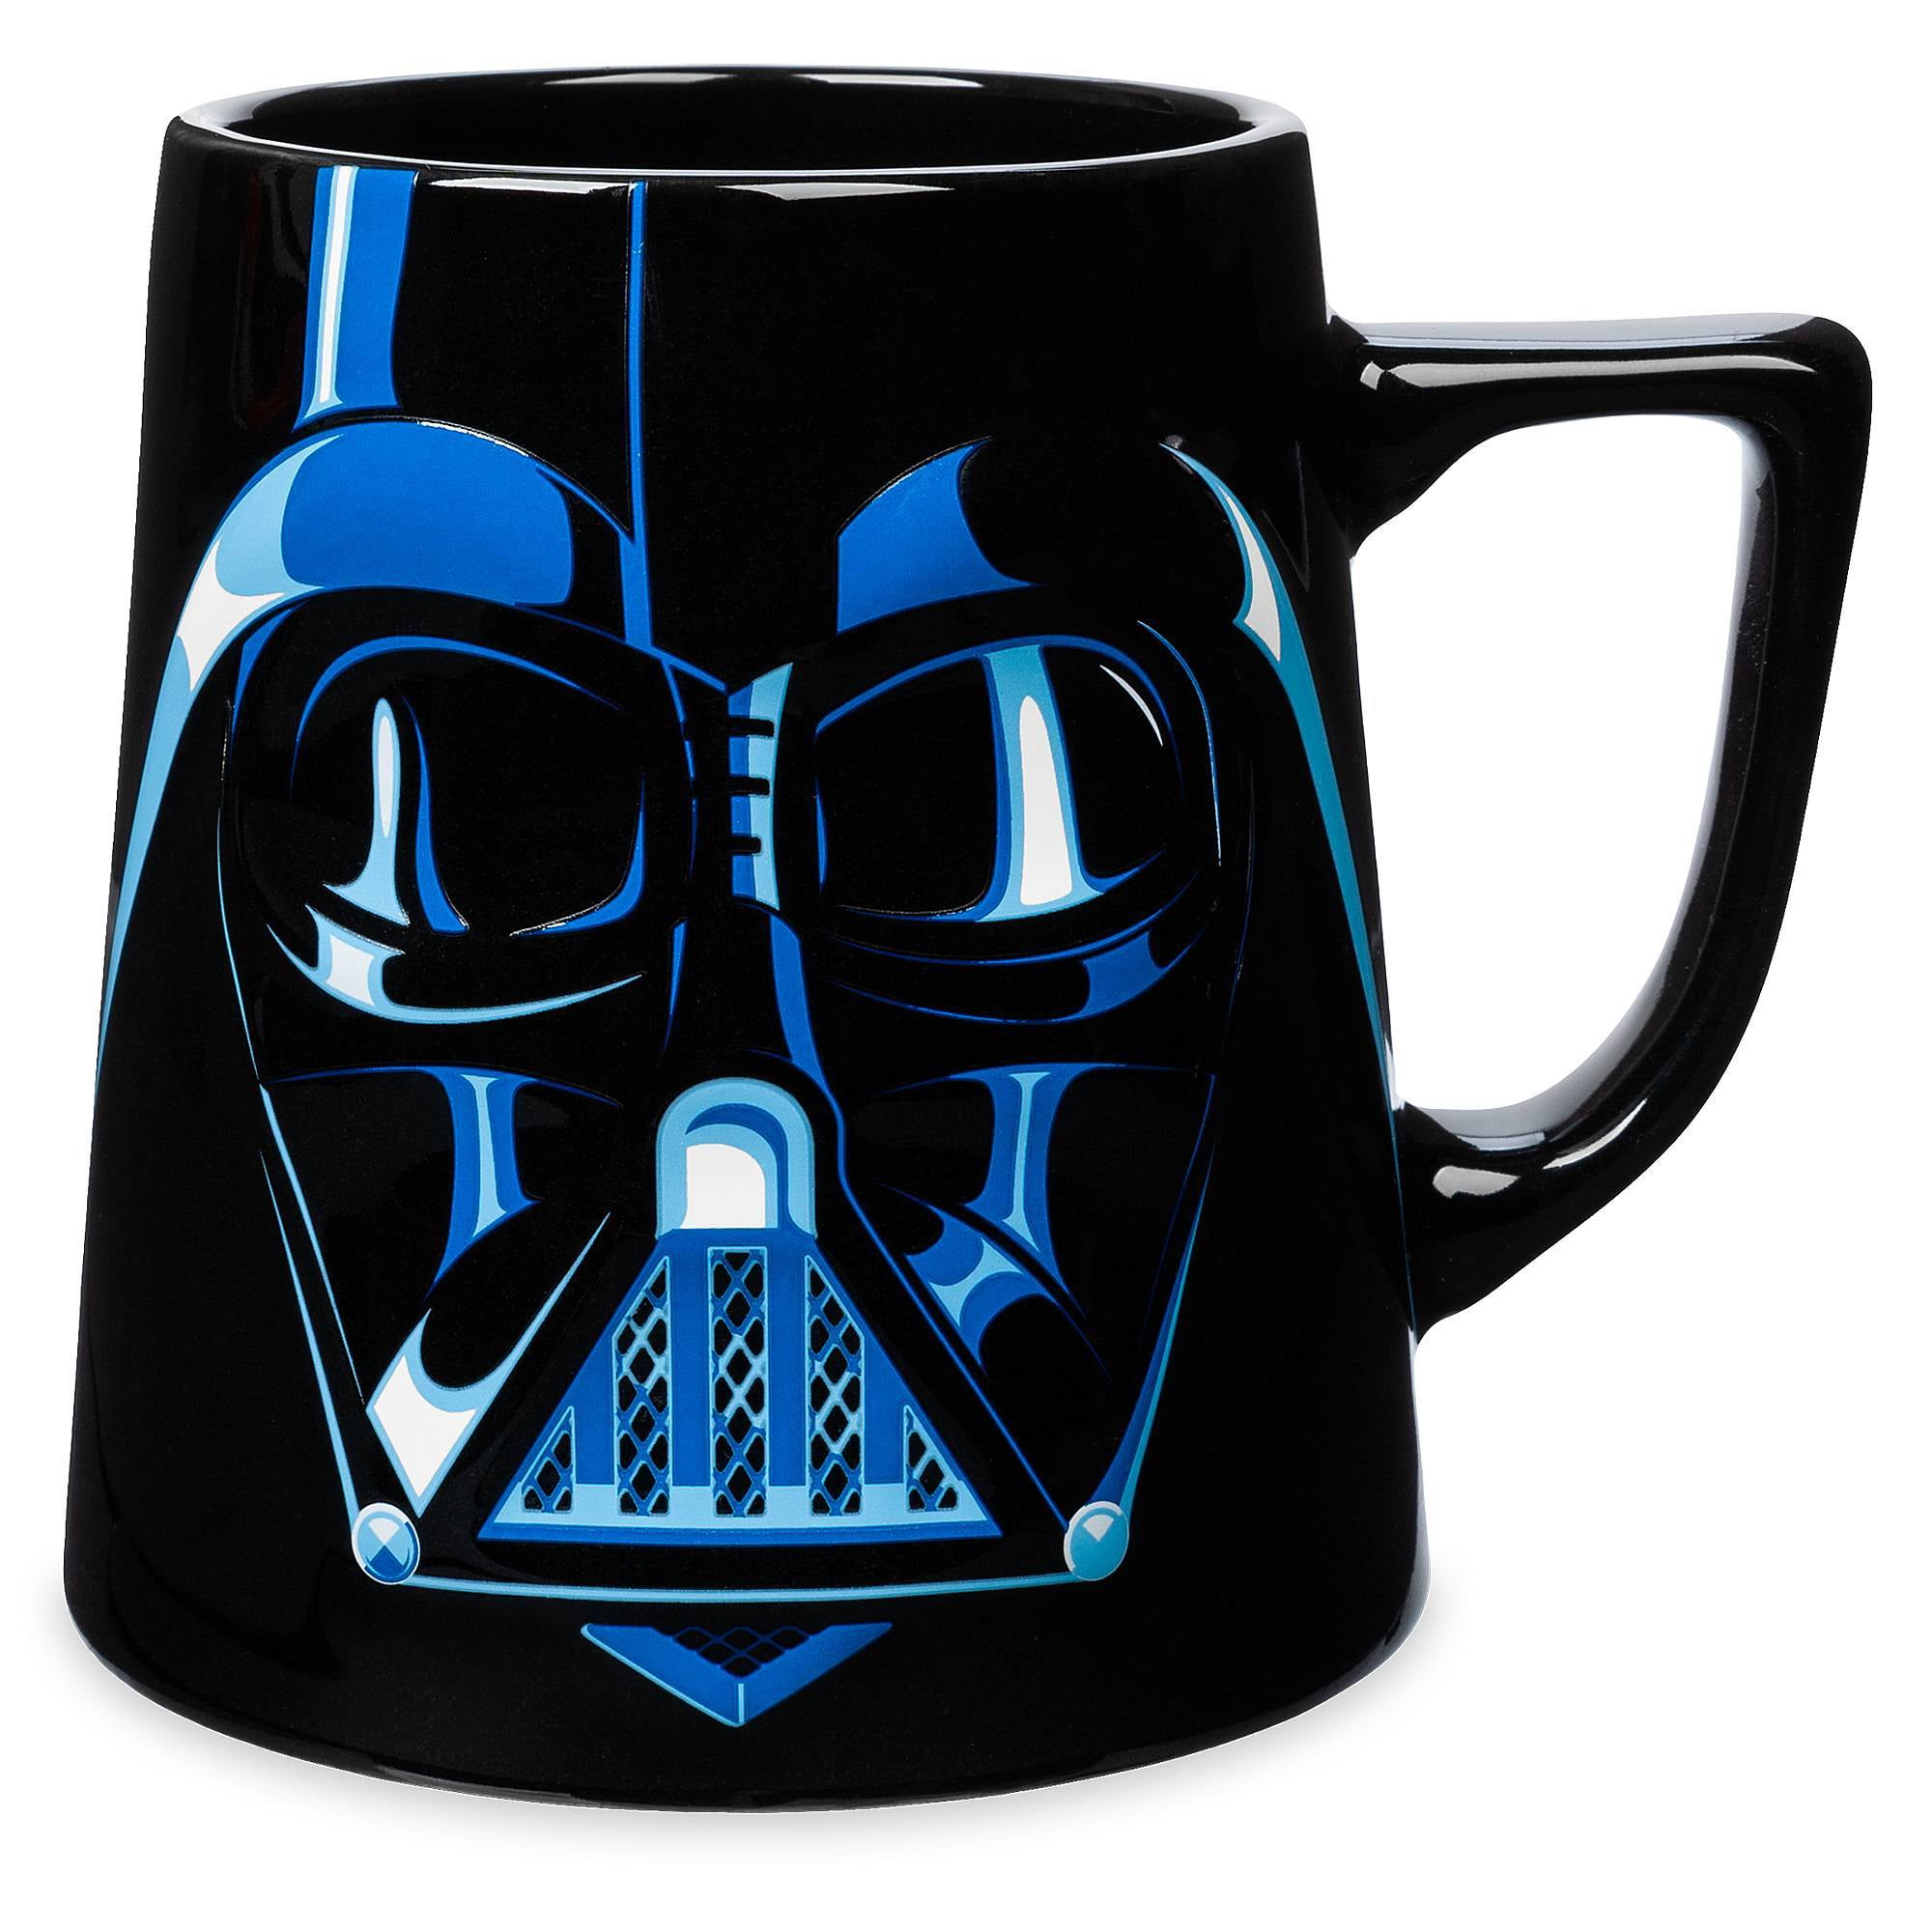 NEW Star Wars Darth Vader Sculpted Ceramic Black Mug Officially Licensed 19oz 